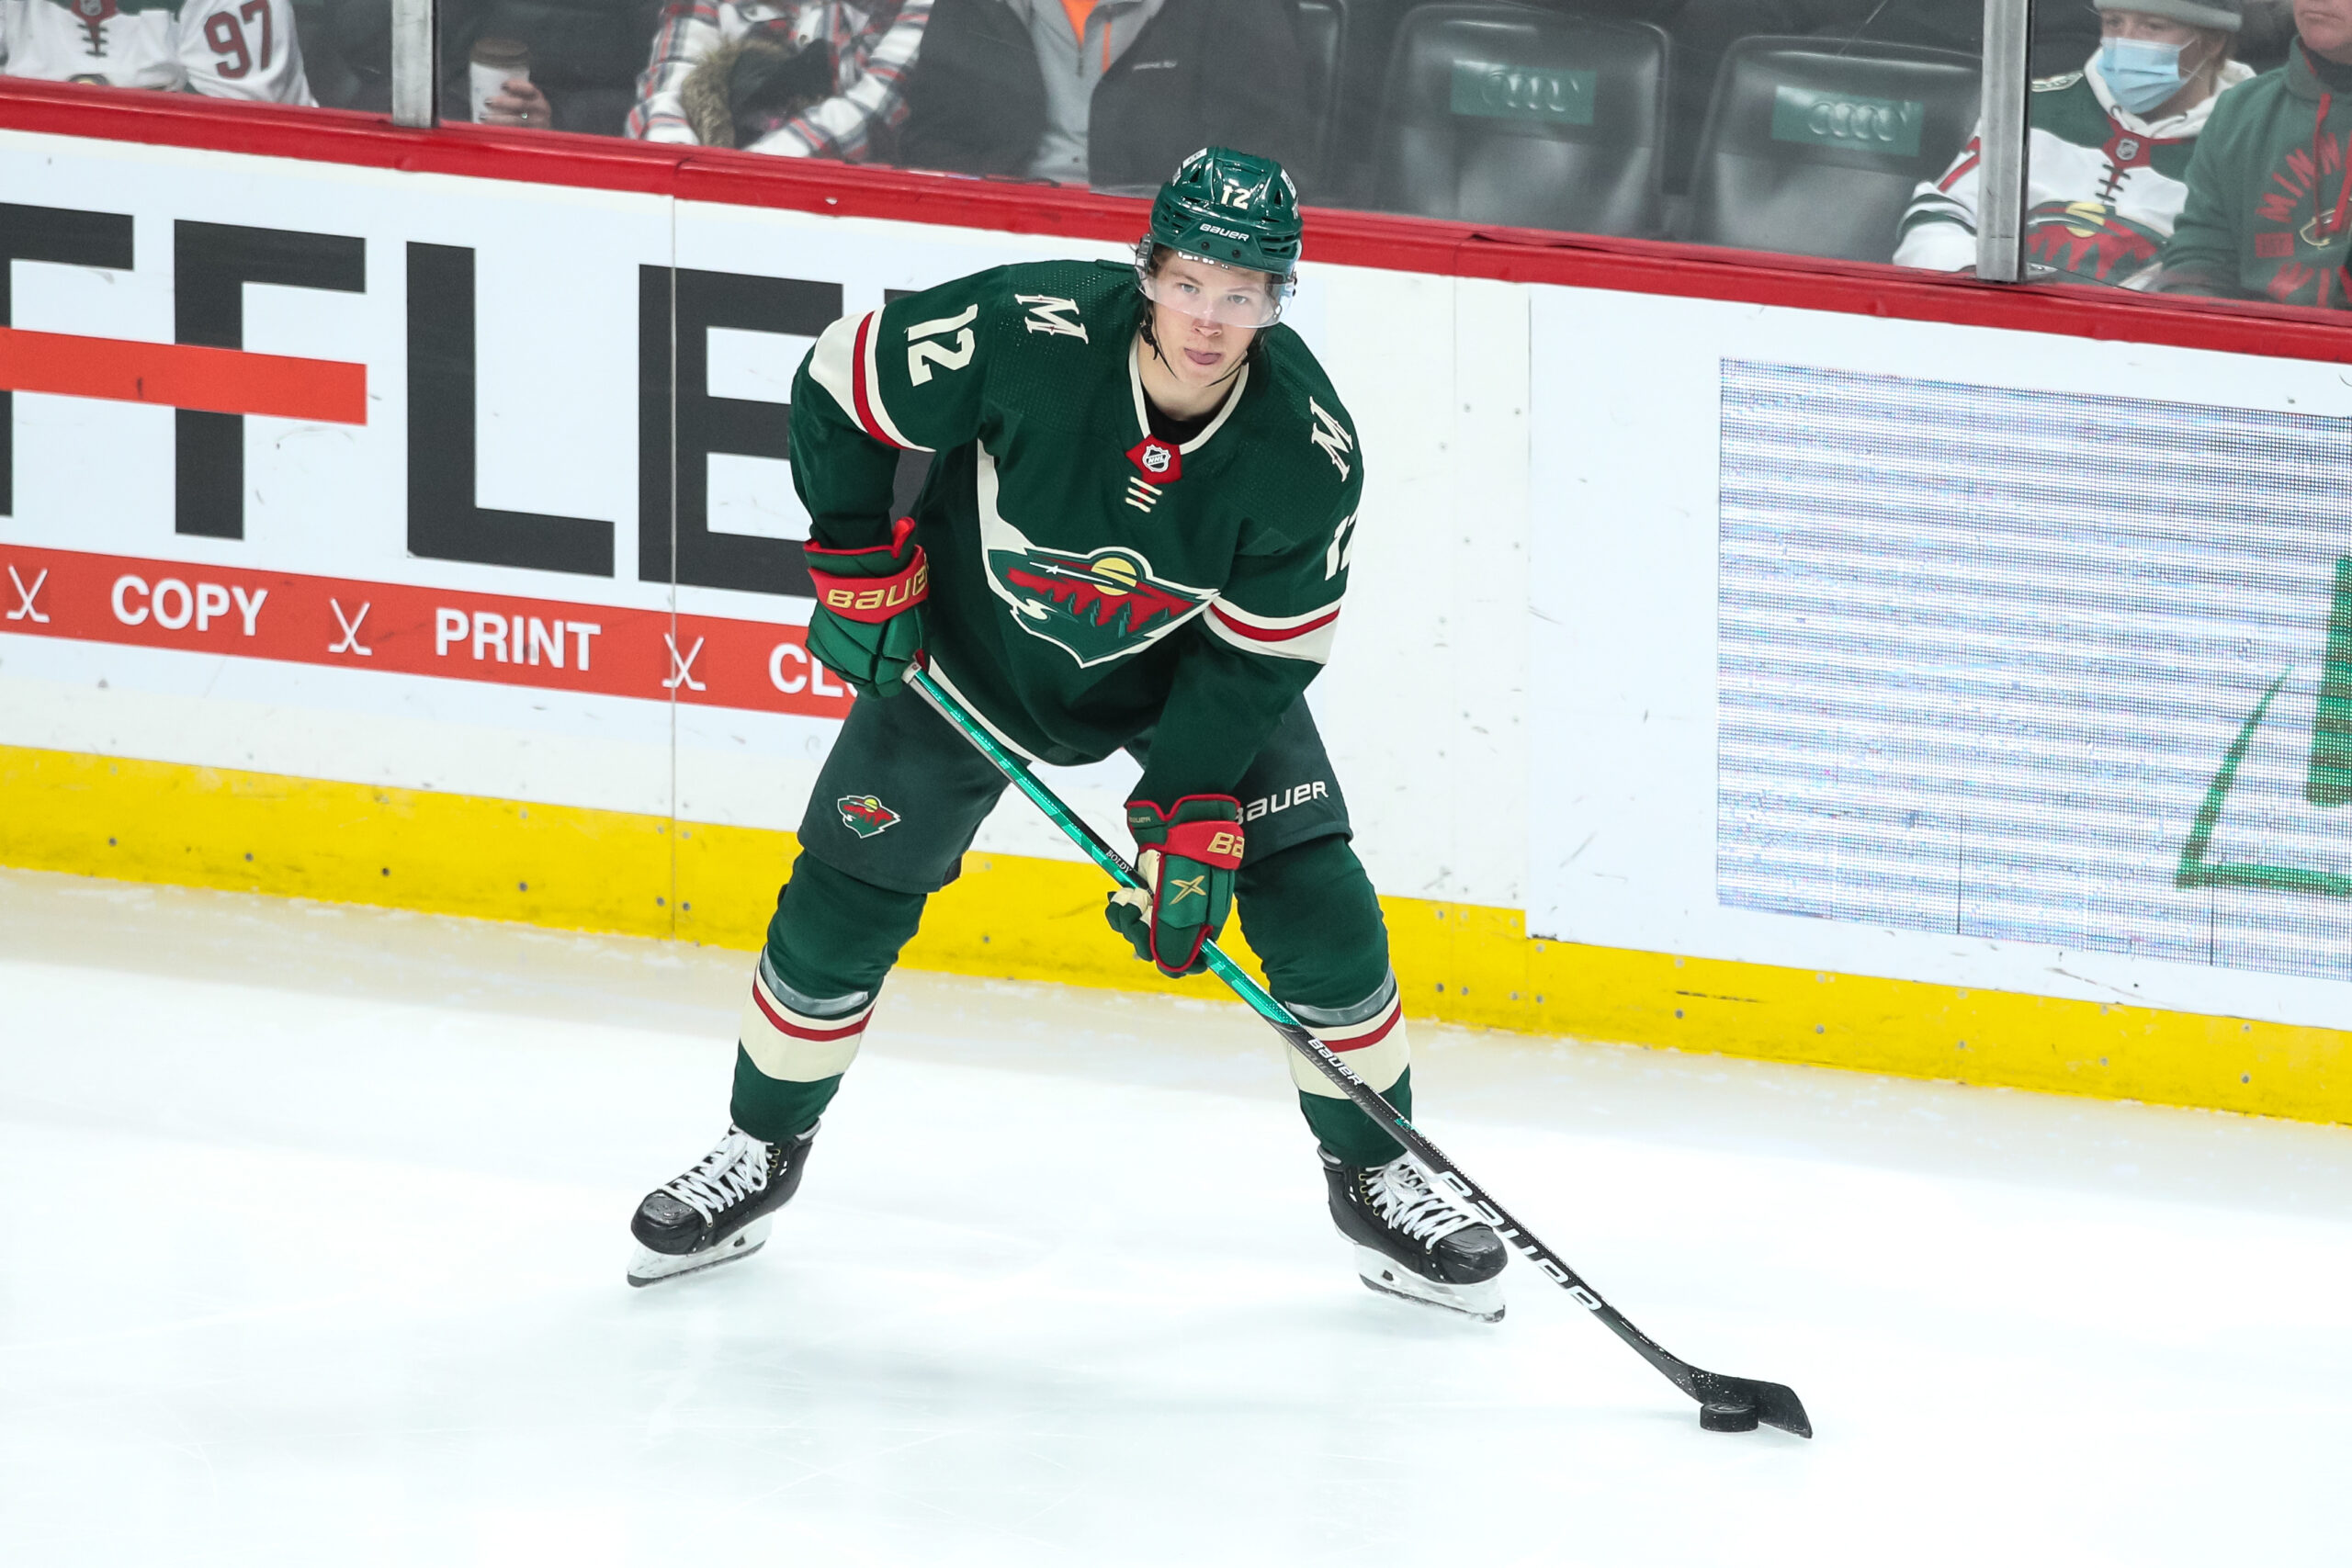 Matt Boldy becomes a scoring leader as Wild enter the NHL playoffs